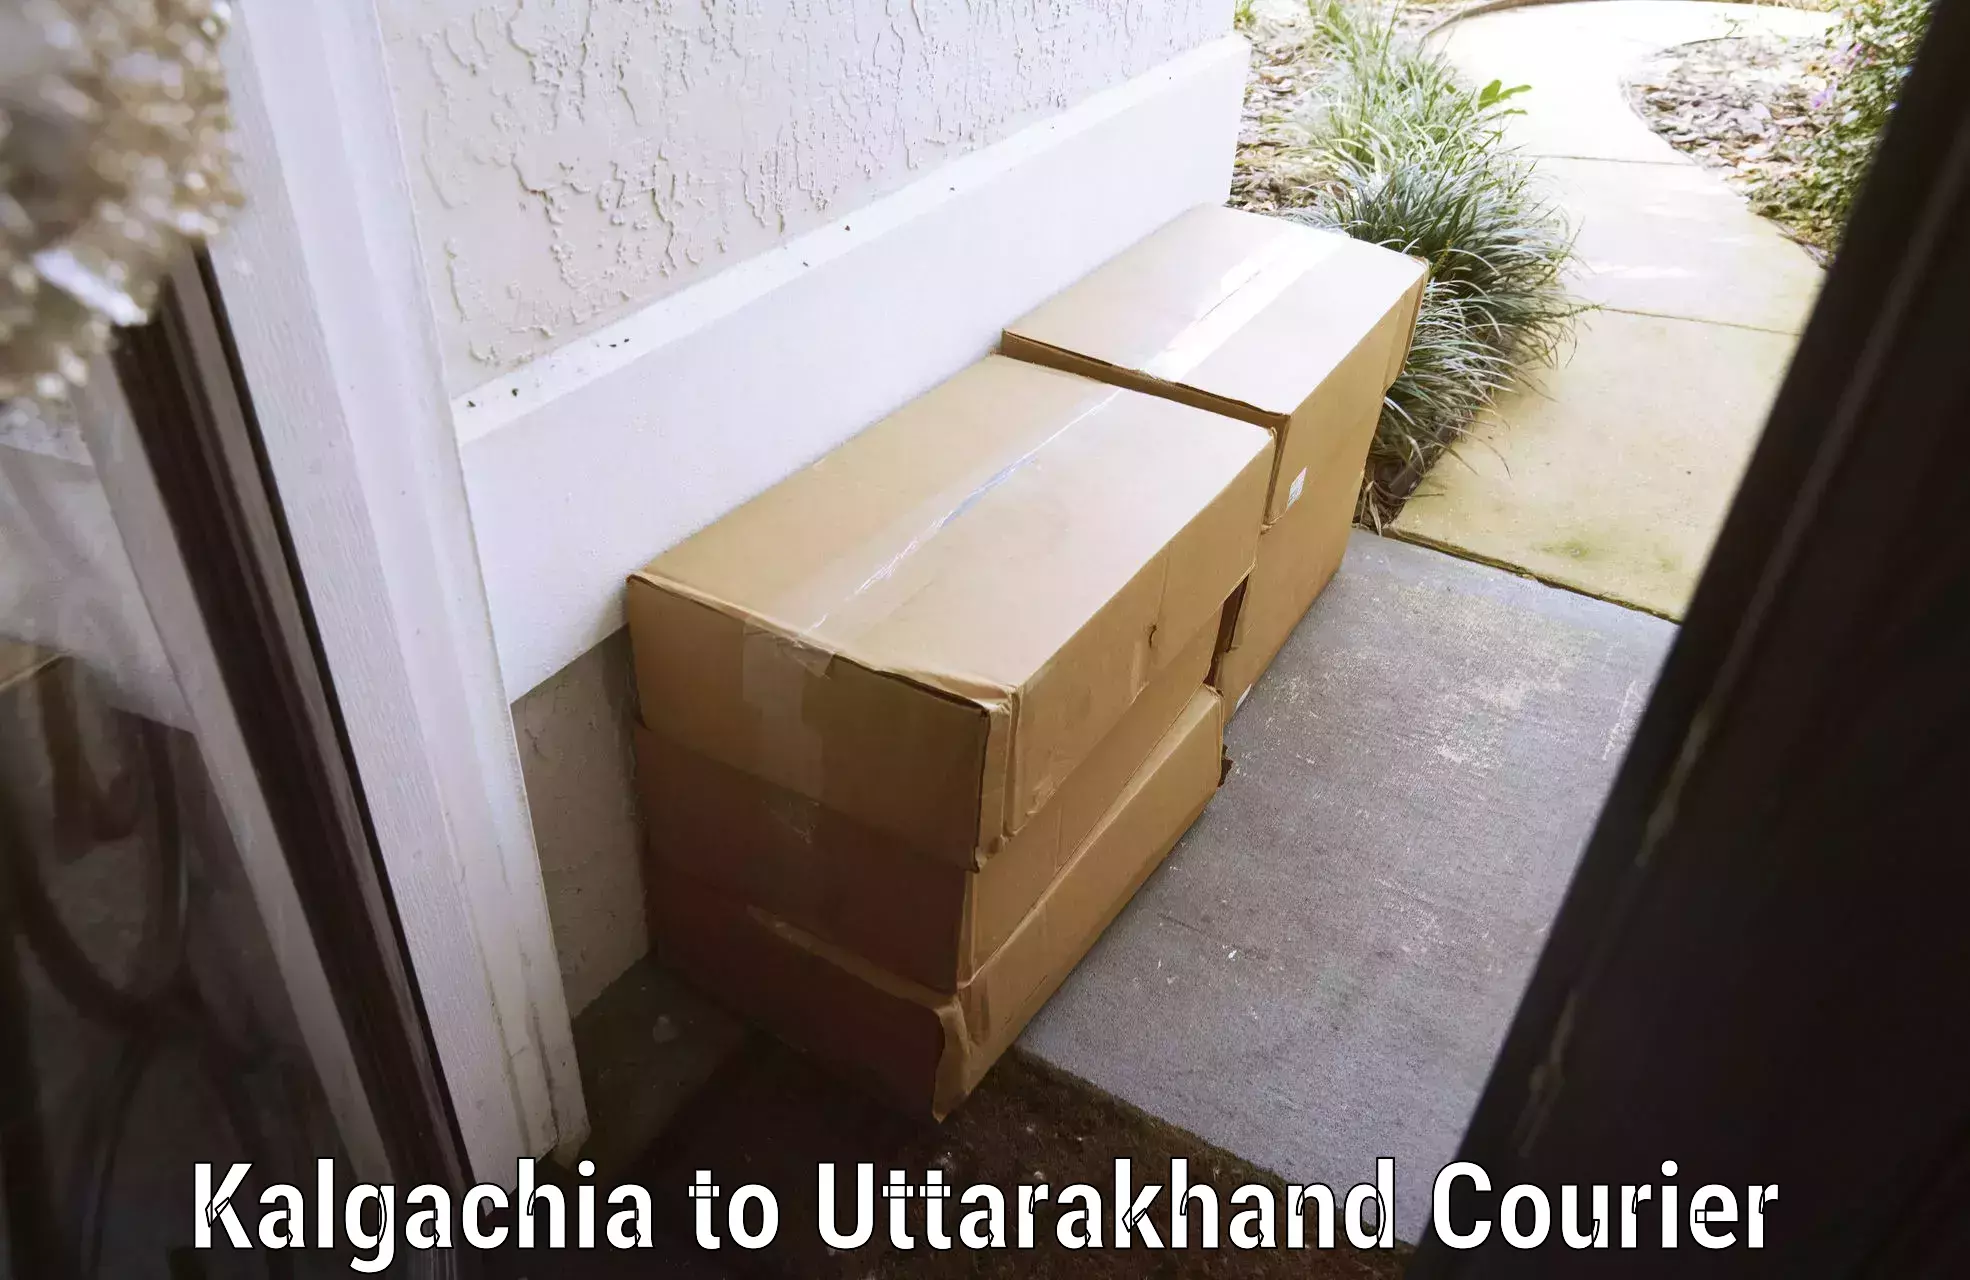 Baggage courier service Kalgachia to Rishikesh